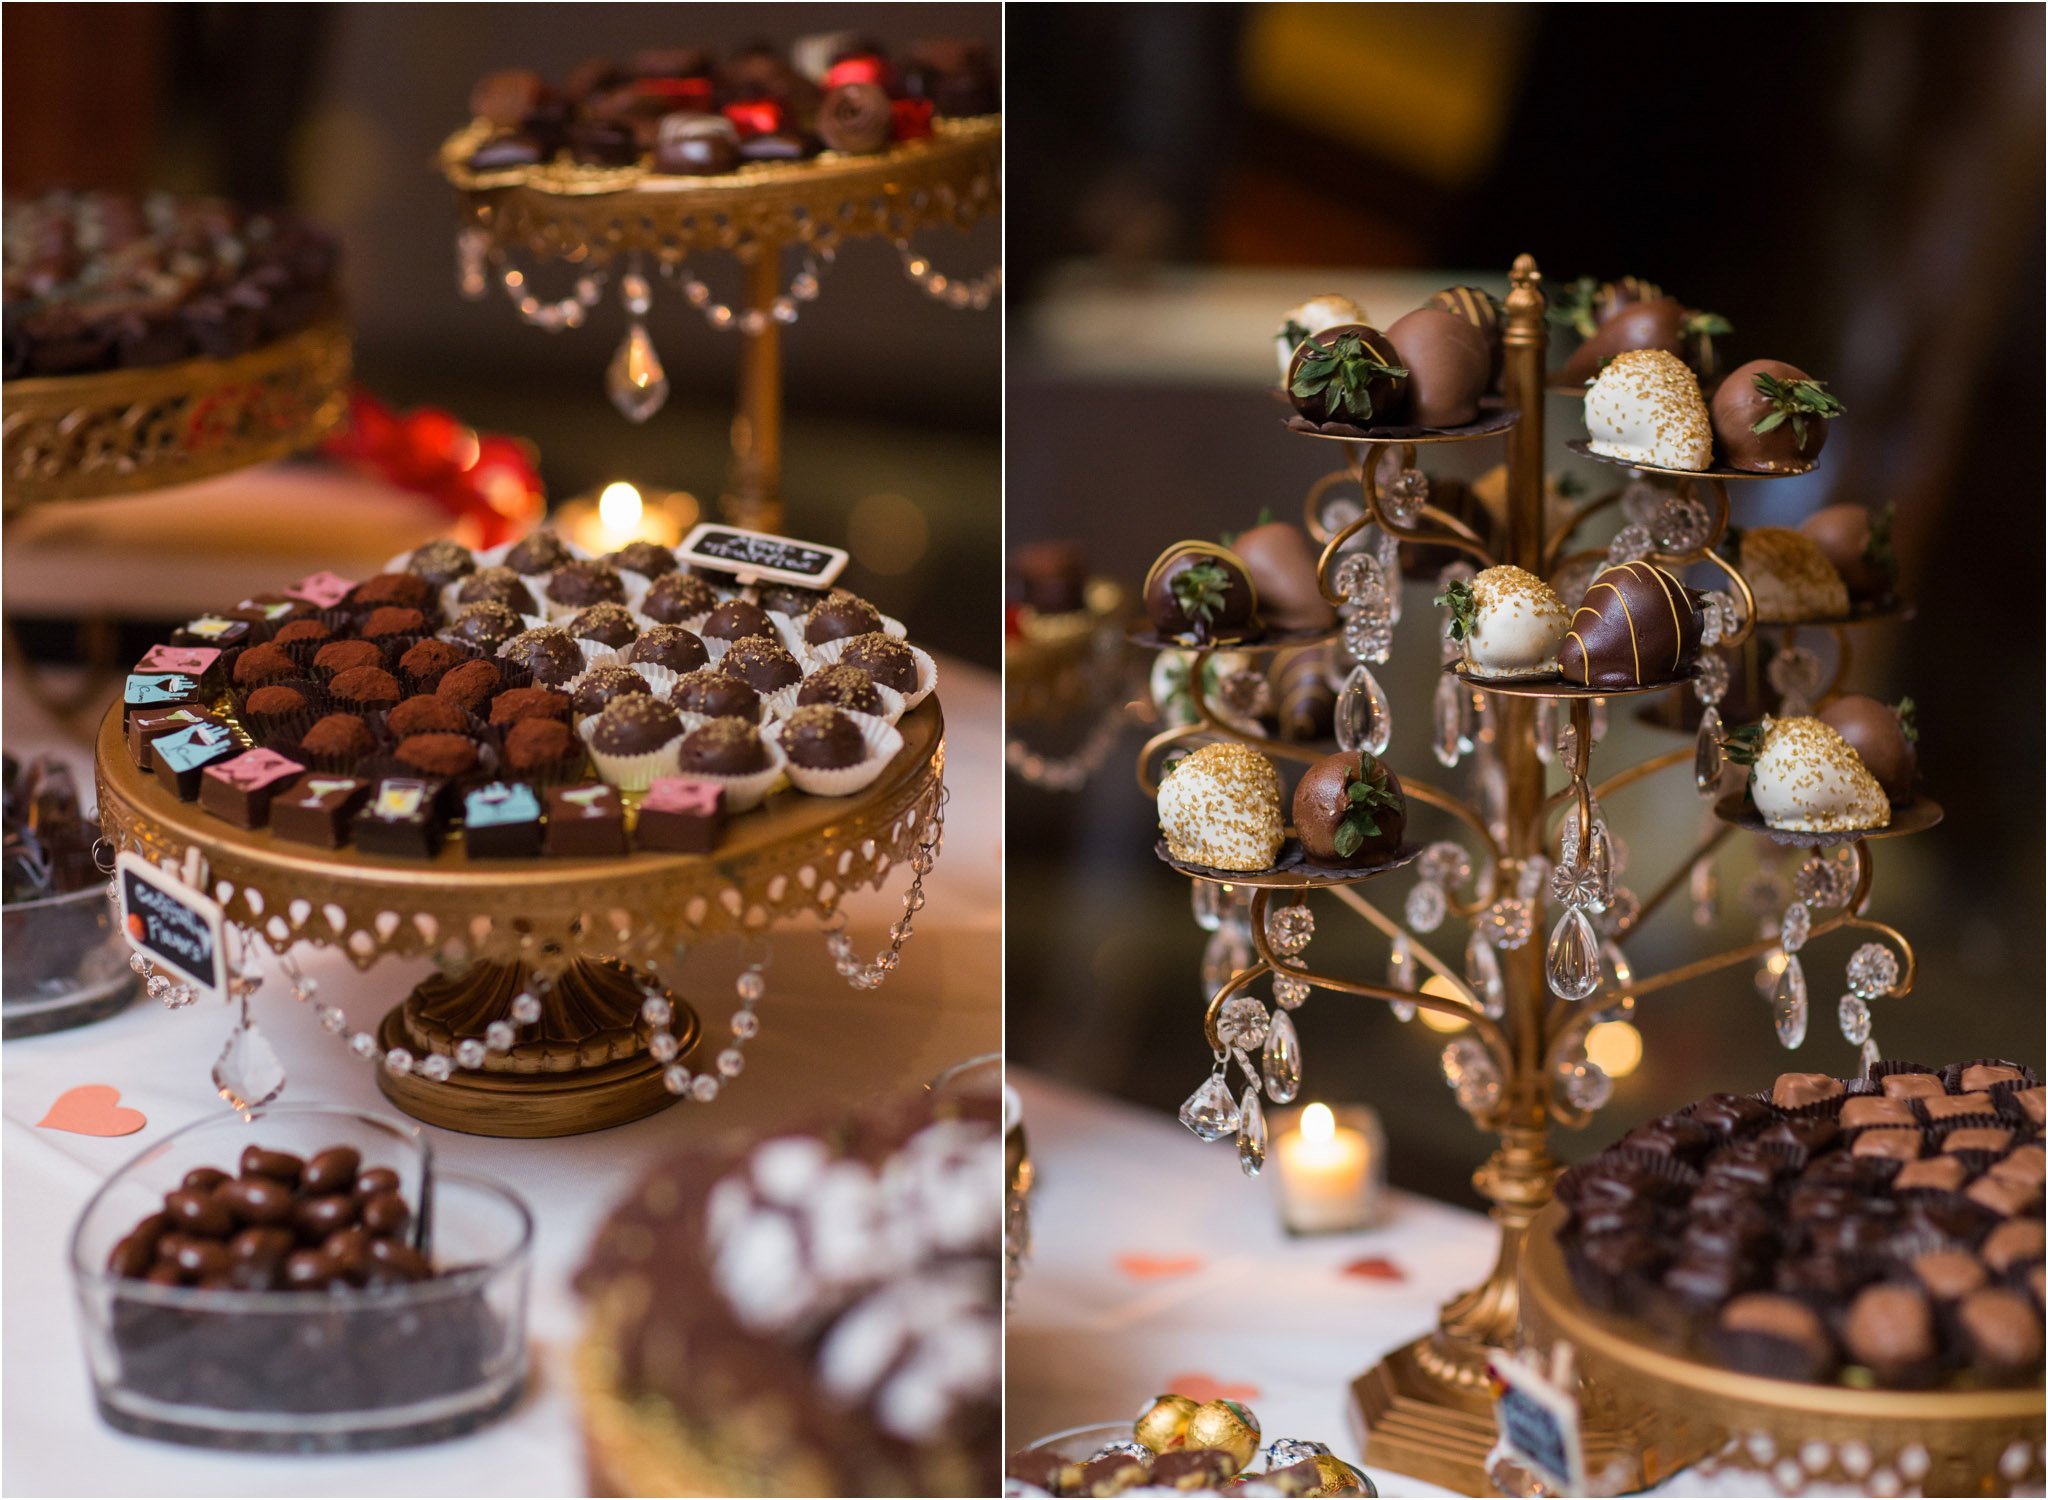 Чтобы организовать необычную стильную свадьбу, можно использовать благородный шоколадный или коричневый цвет Какие цвета хорошо сочетаются с коричневым: тонкости и нюансы оформления свадьбы в шоколадном цвете Идеи для оформления свадебного зала в коричнев